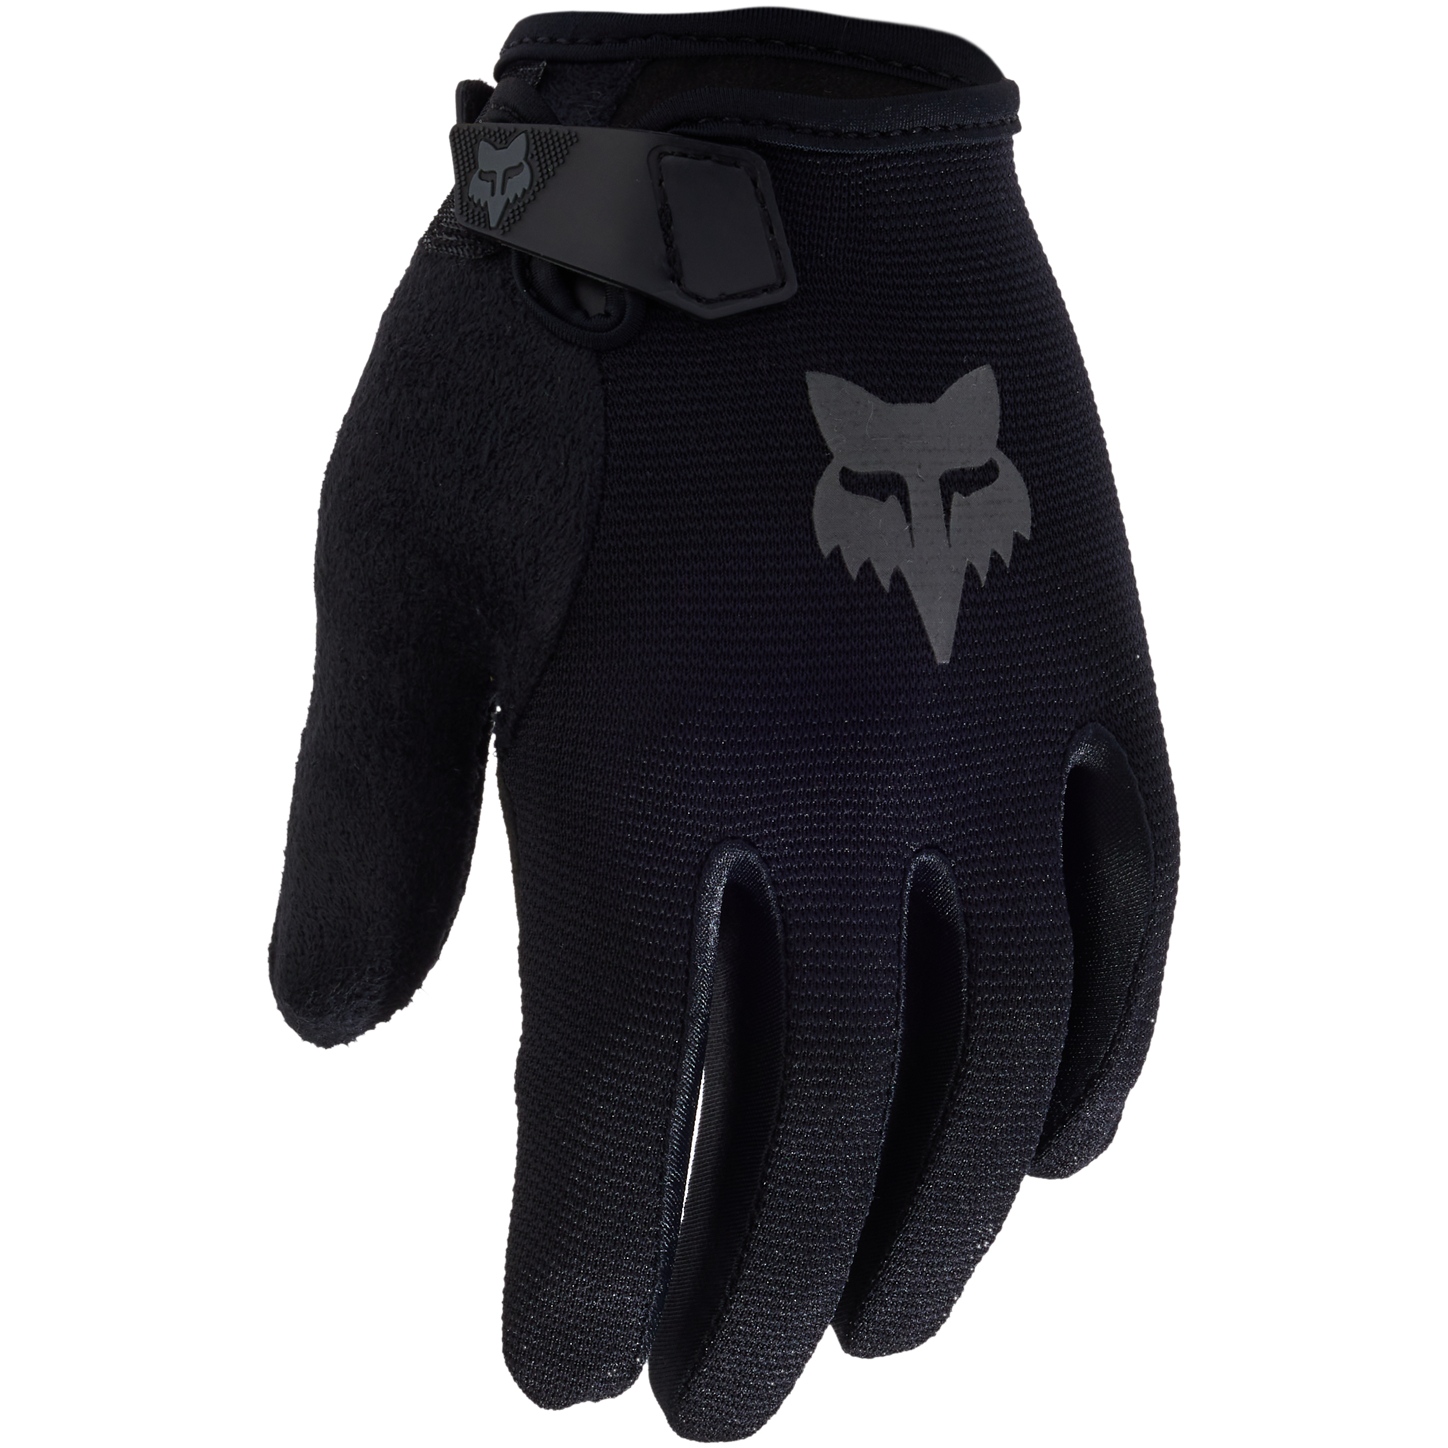 Produktbild von FOX Ranger MTB Kinder Vollfingerhandschuhe - schwarz